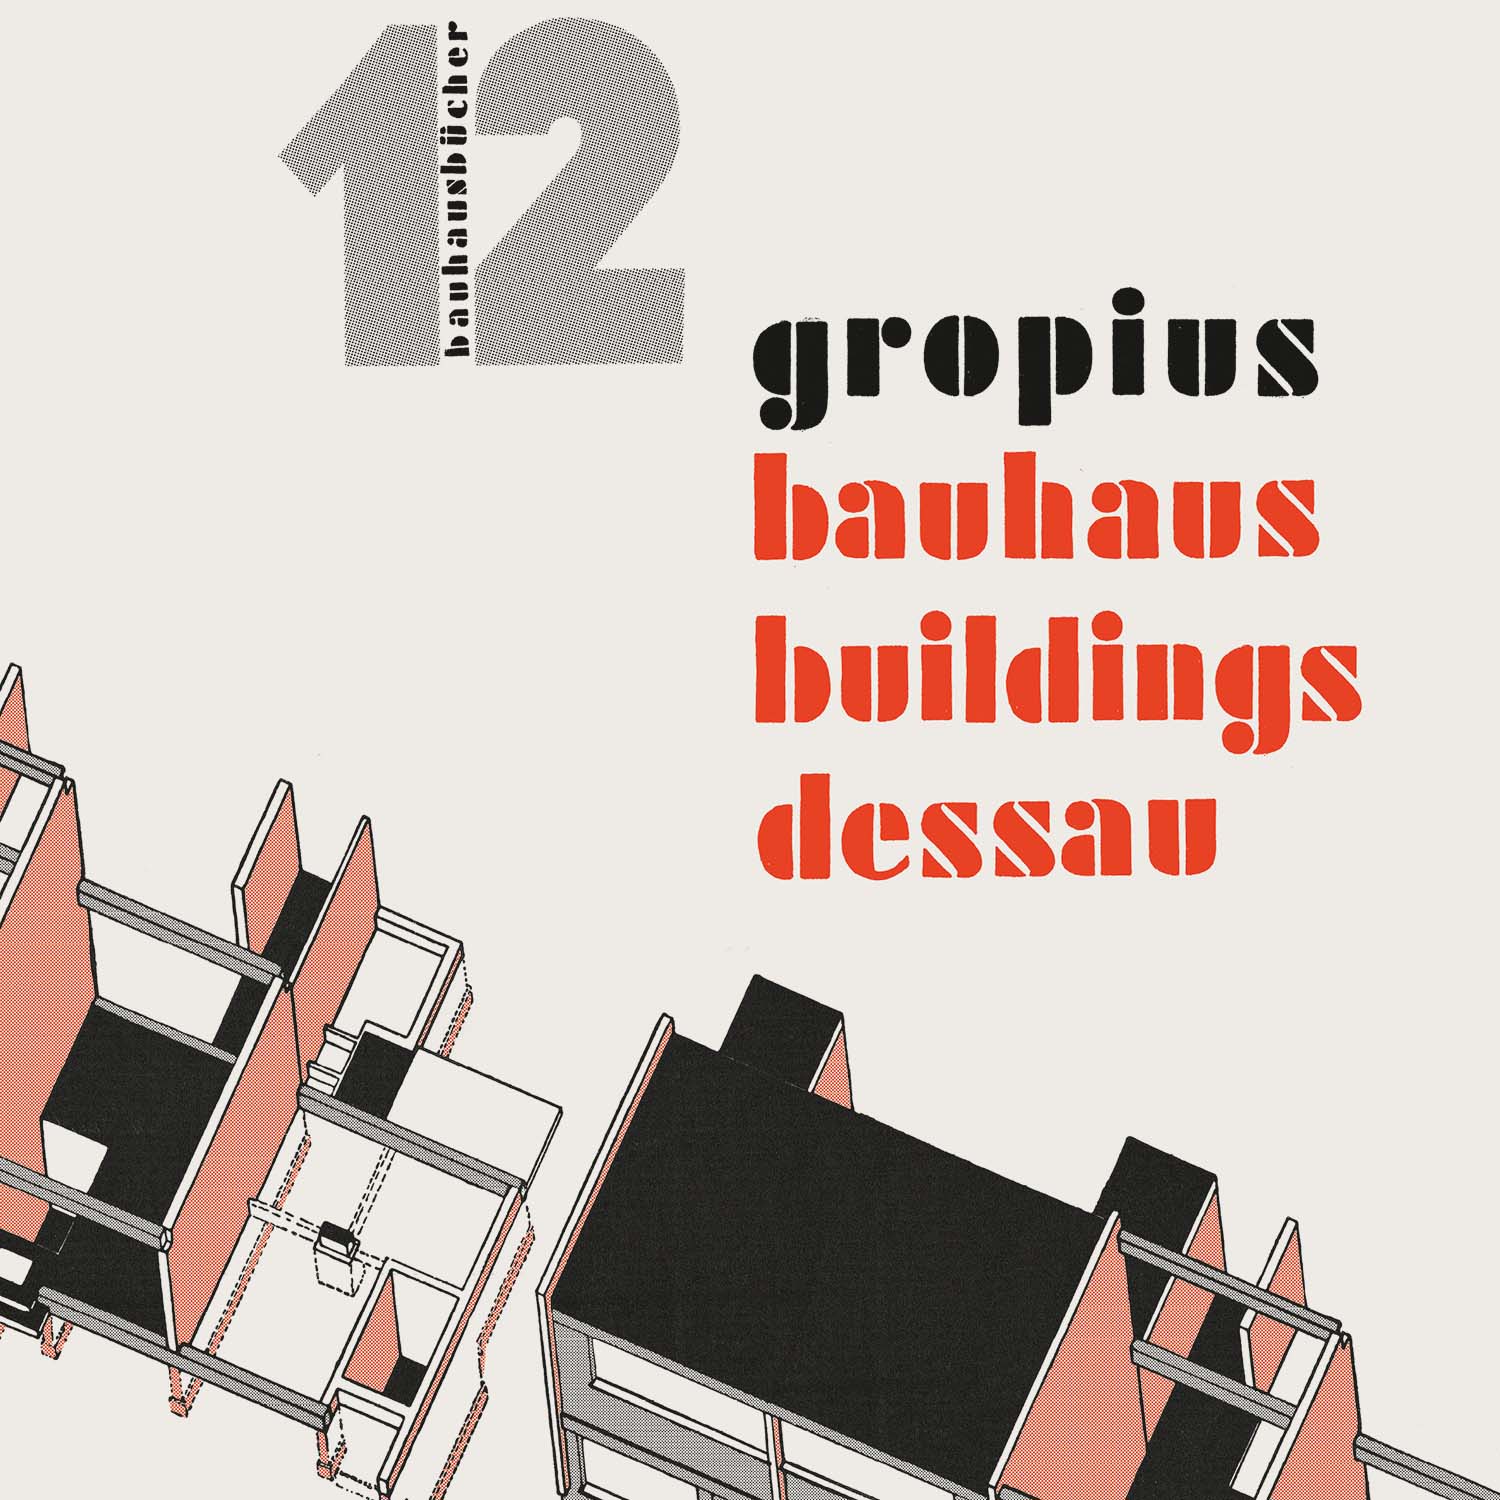 Imagen de Edificios de la Bauhaus en Dessau